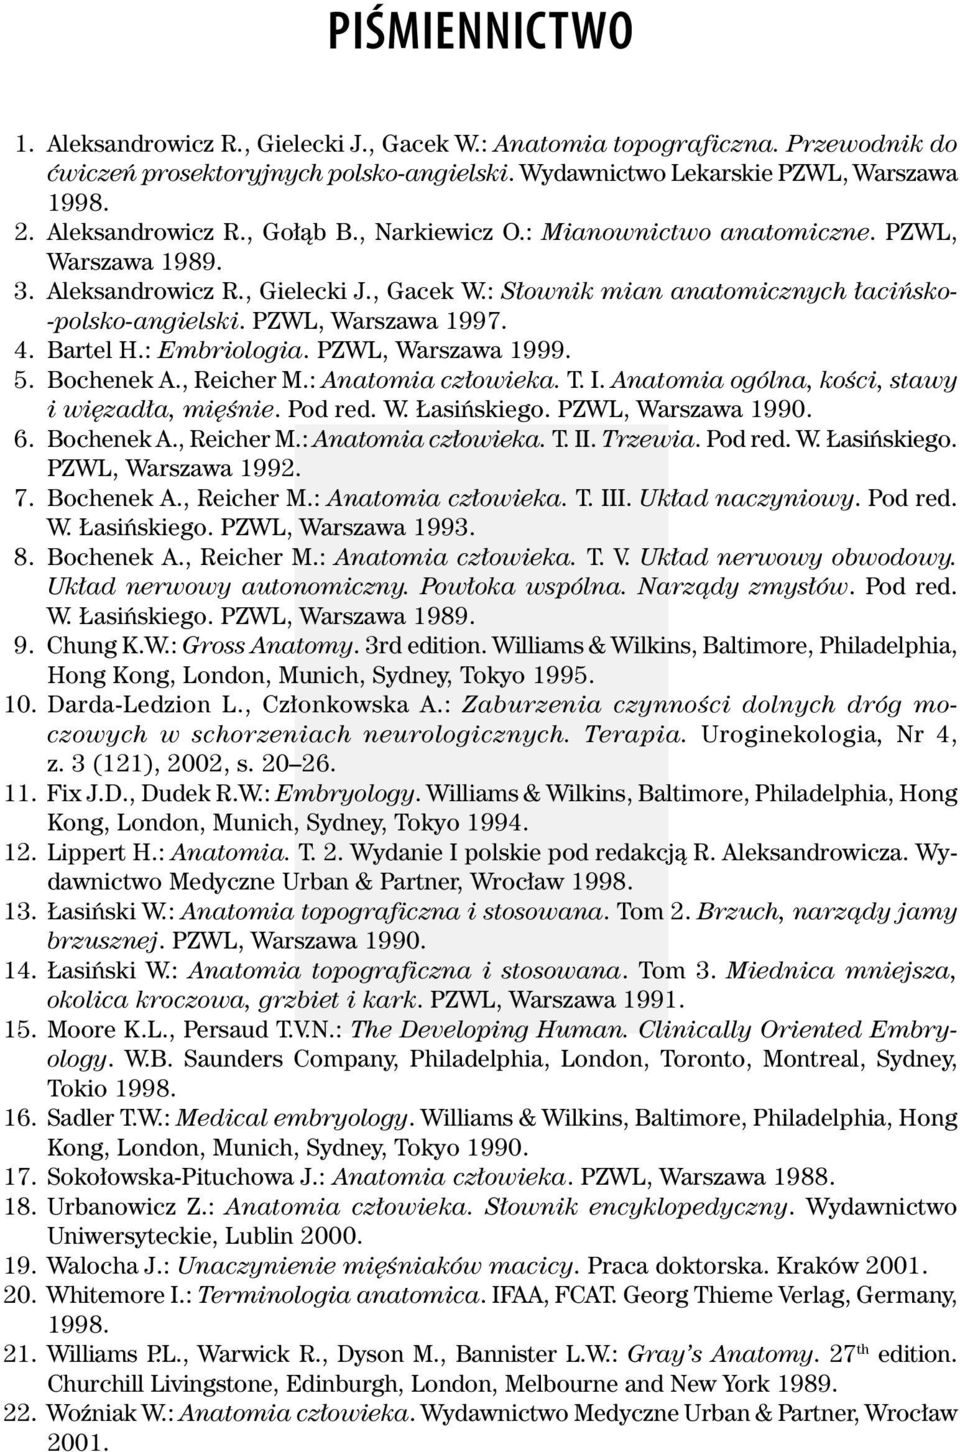 PZWL, Warszawa 1997. 4. Bartel H.: Embriologia. PZWL, Warszawa 1999. 5. Bochenek A., Reicher M.: Anatomia człowieka. T. I. Anatomia ogólna, kości, stawy i więzadła, mięśnie. Pod red. W. Łasińskiego.